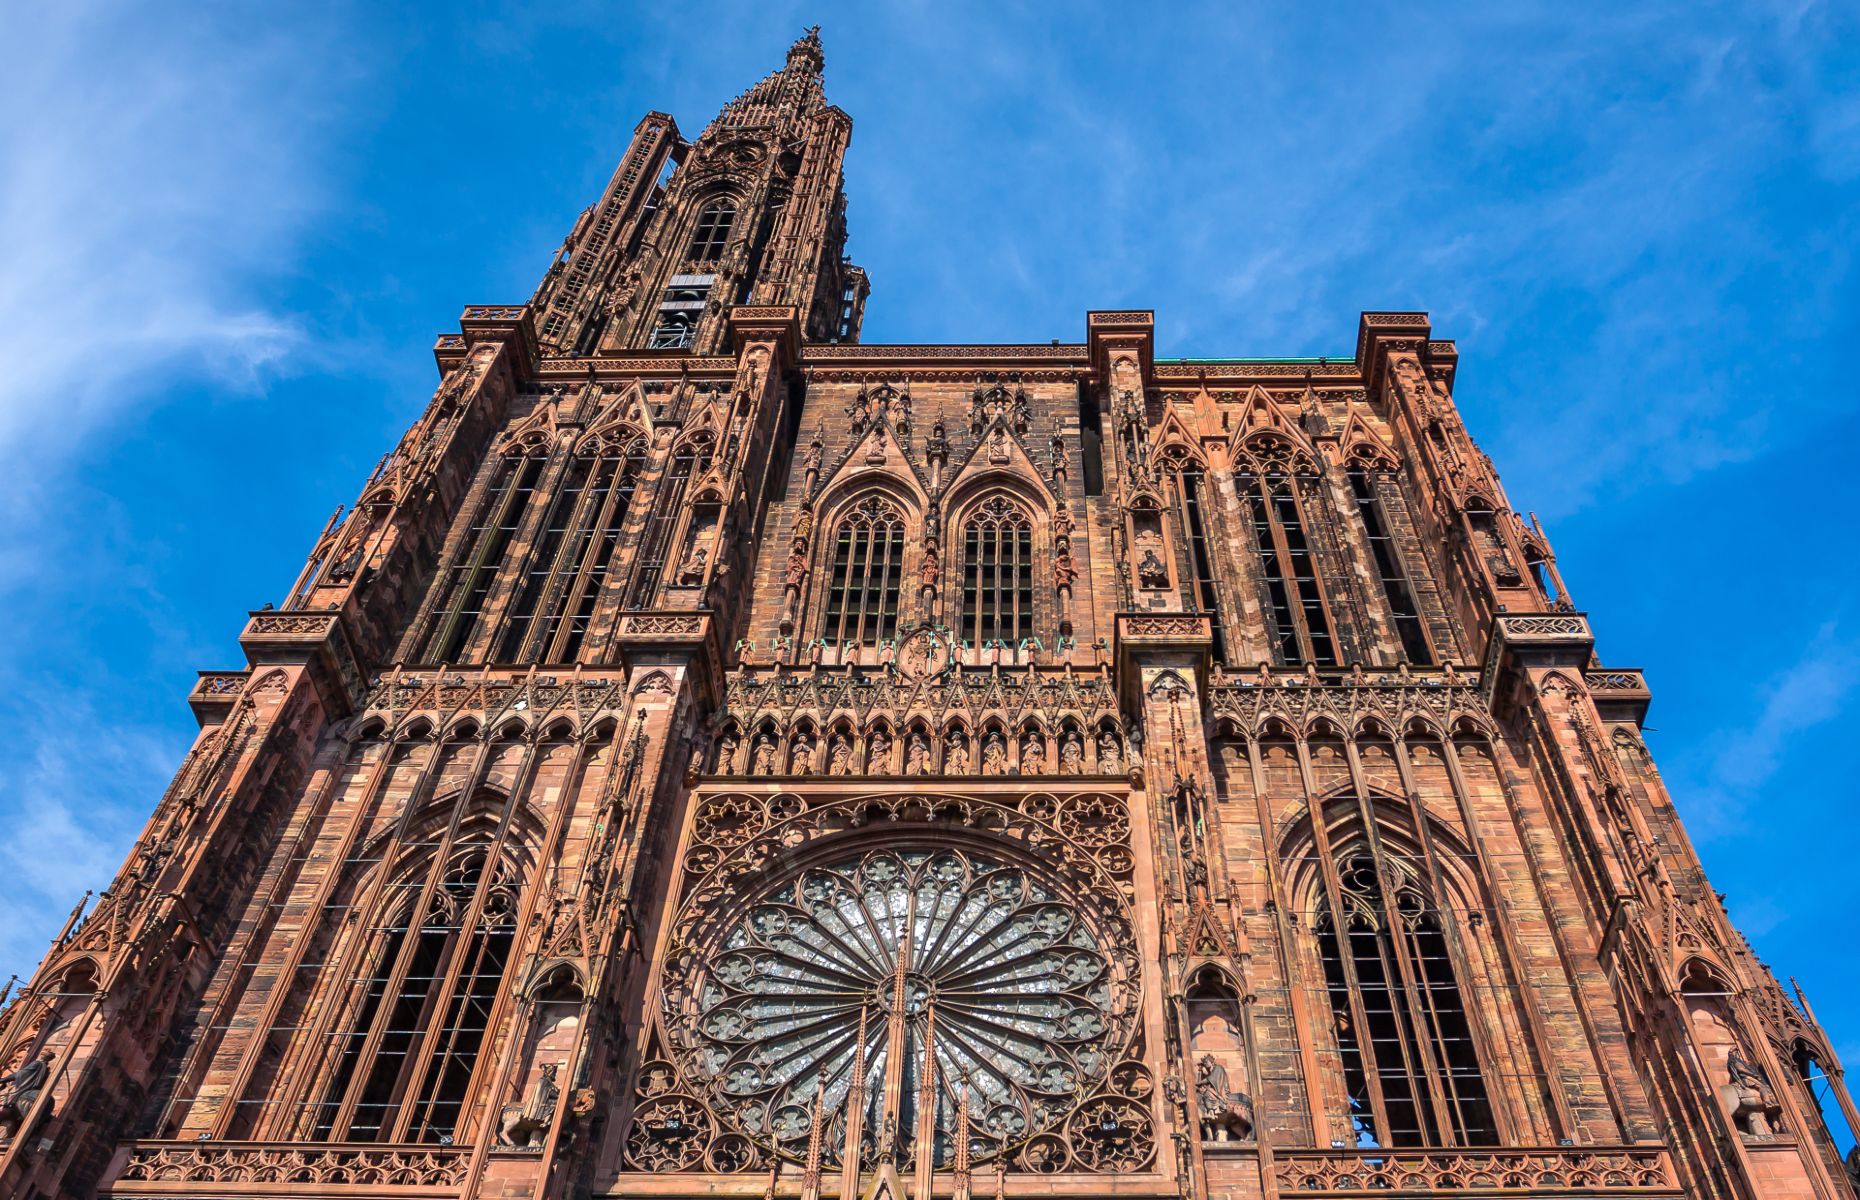 Cathedrale de Notre Dame (Image: Sergey Kelin/Shutterstock)